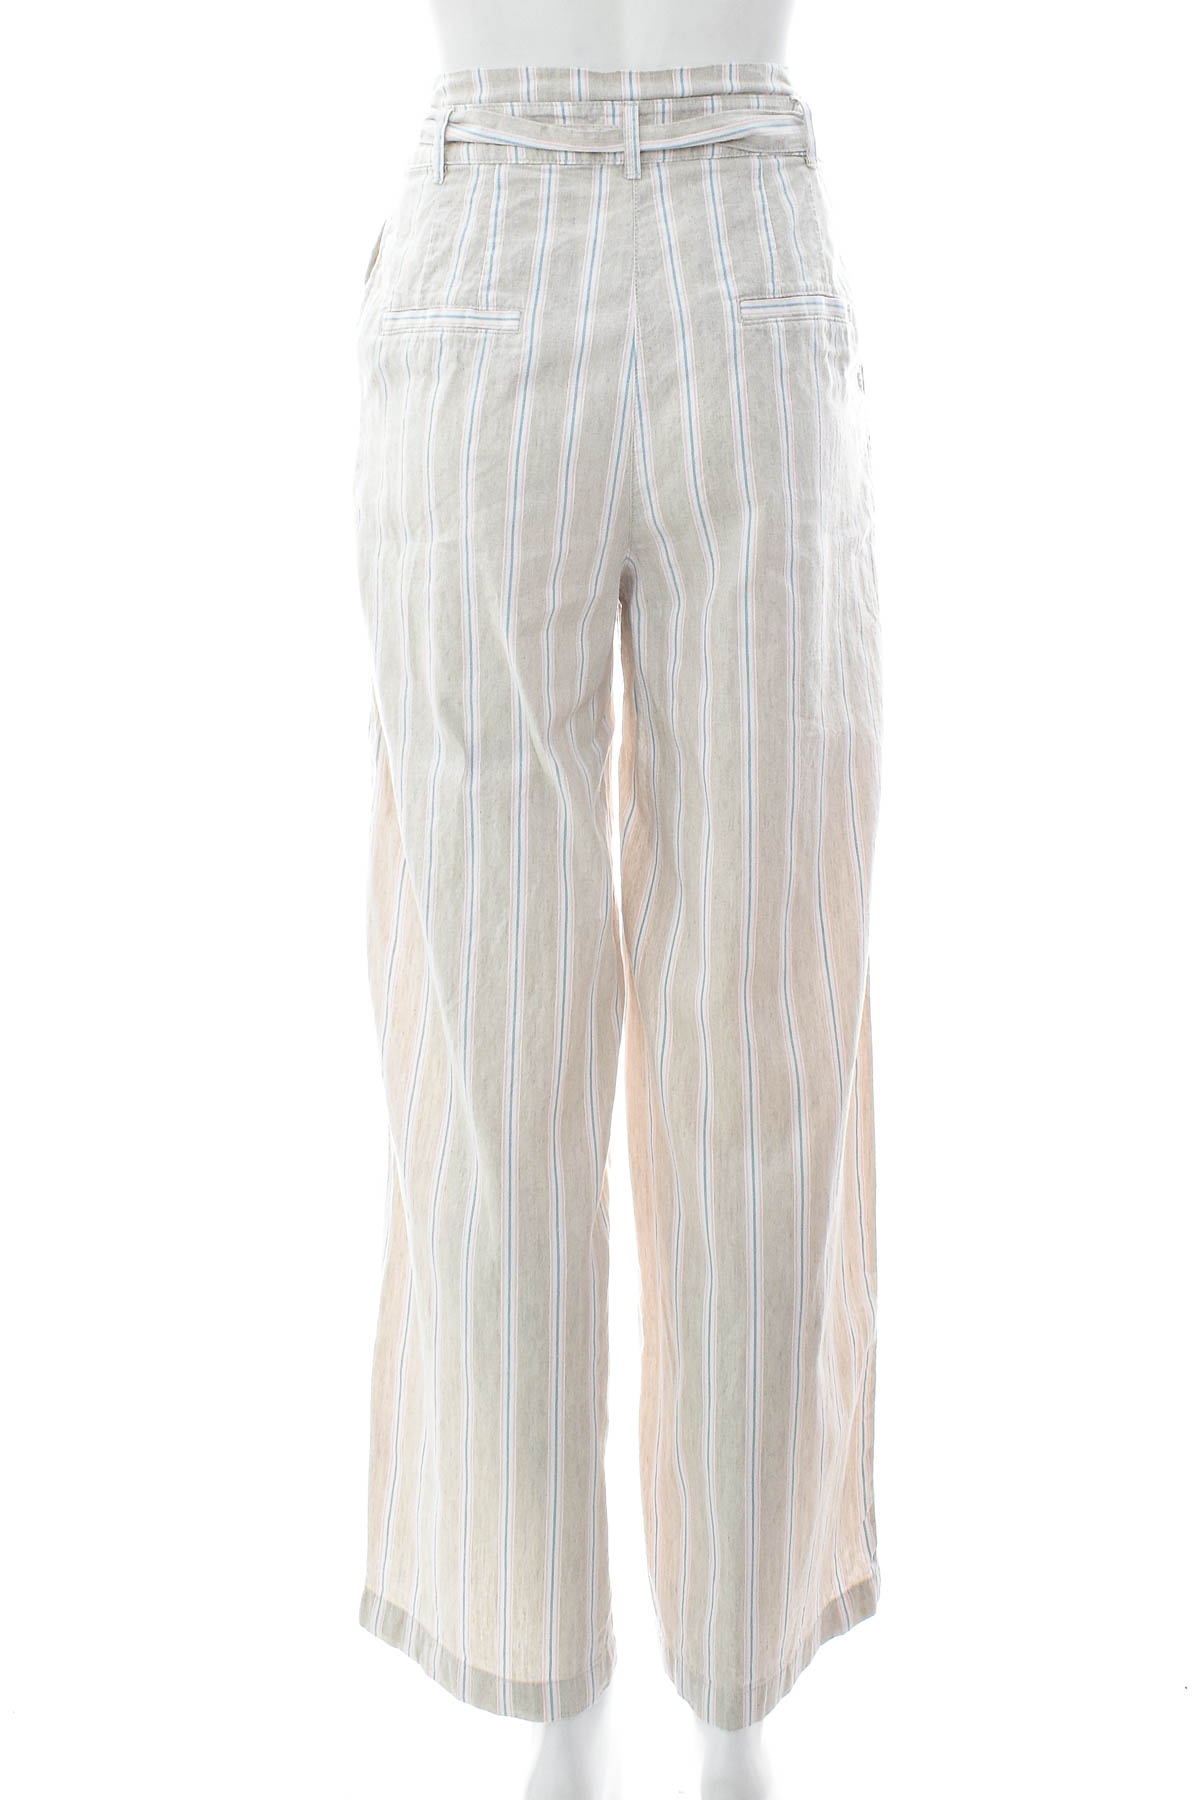 Pantaloni de damă - ESPRIT - 1